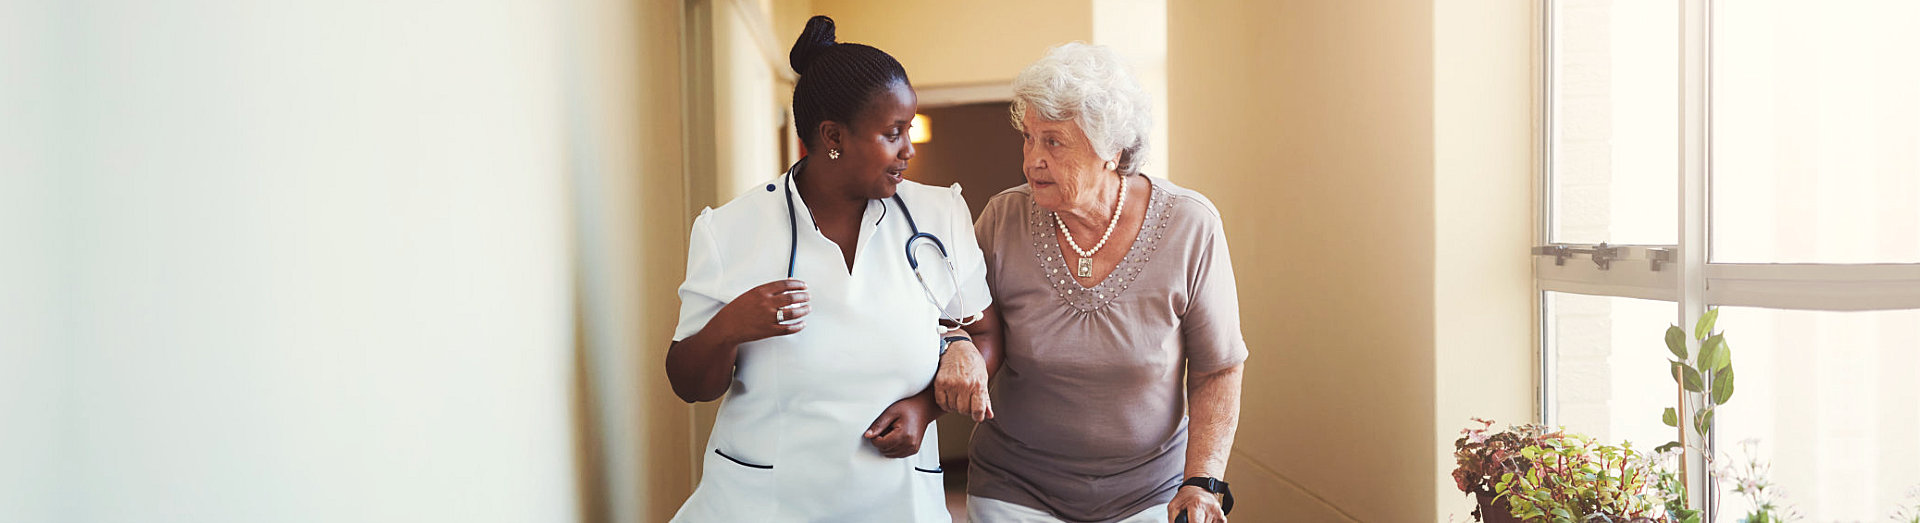 nurse and senior woman talking while walking